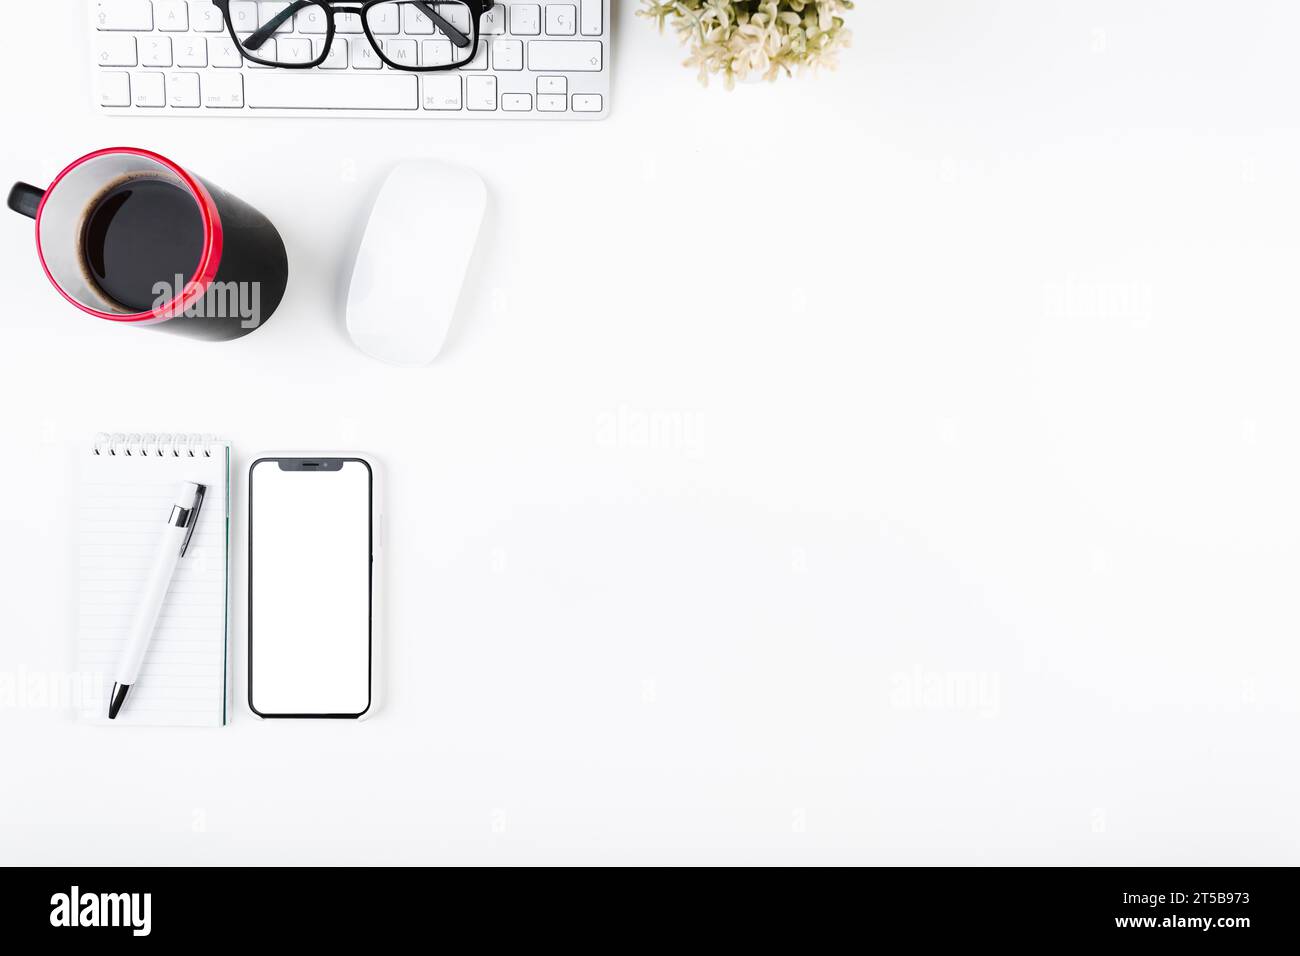 Espace de travail avec clavier mug smartphone Banque D'Images